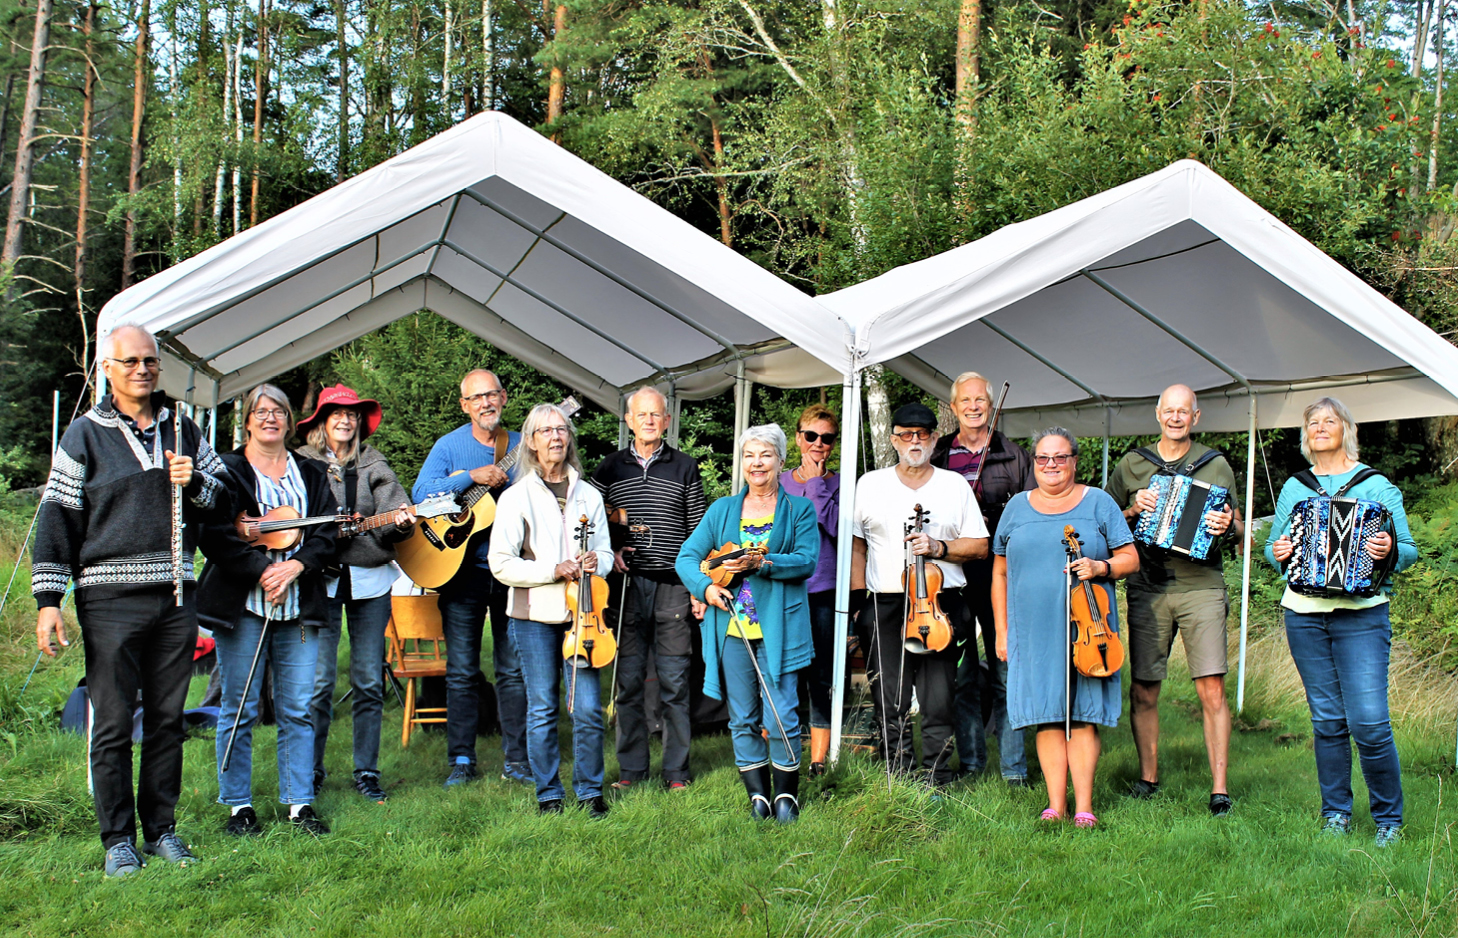 Gruppfoto. Bokenäsets Ådras tretton musiker, utomhus i grönt gräs under två vita partytält